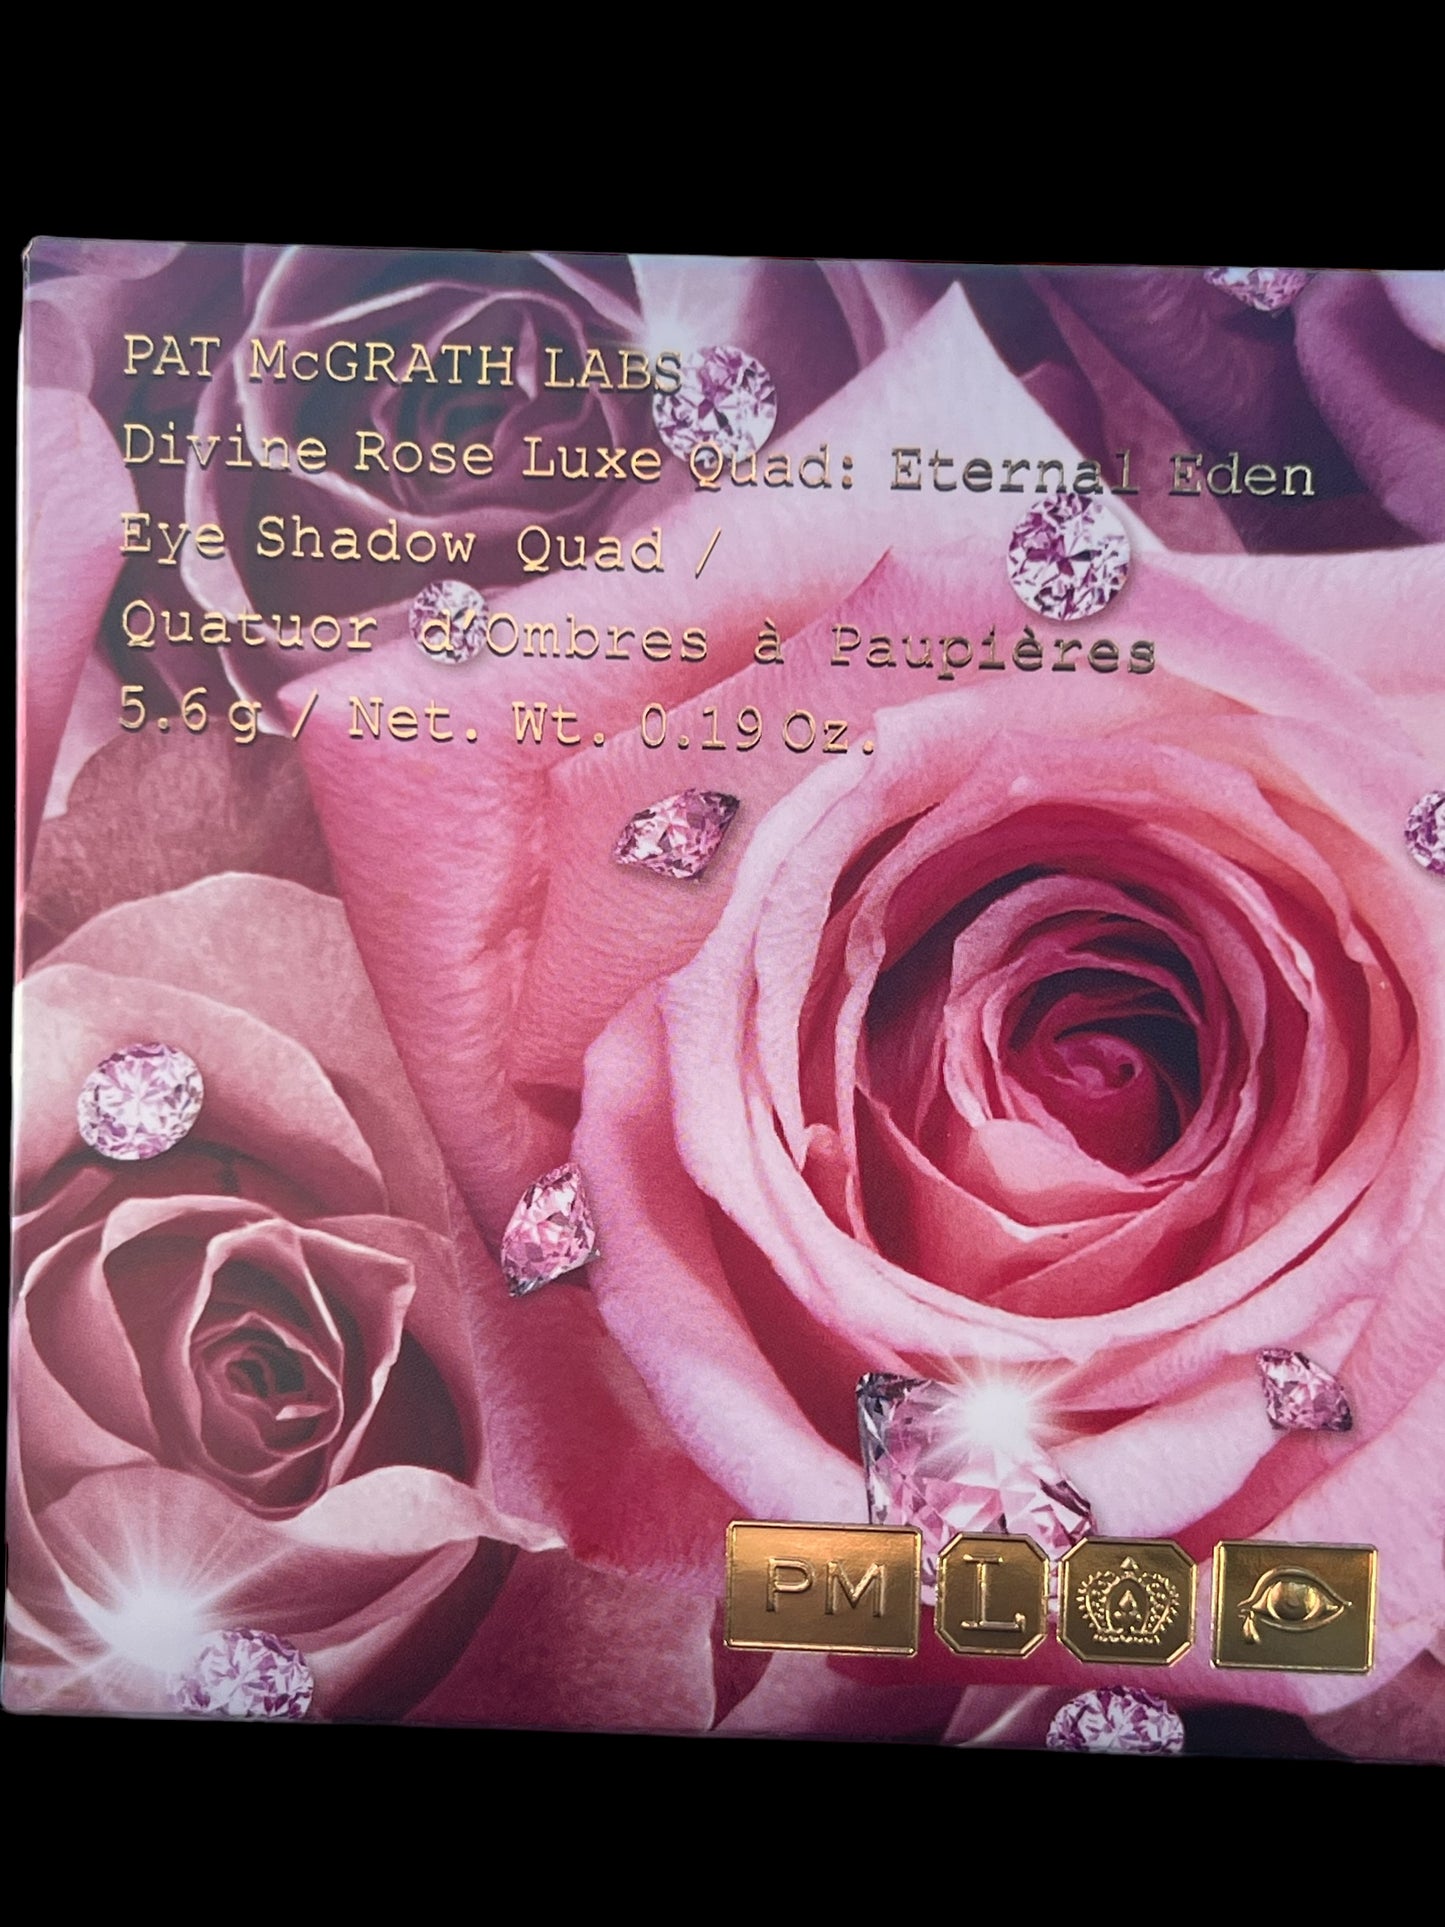 Pat McGrath LABS Divine Rose Luxe Quad: Eternal Eden